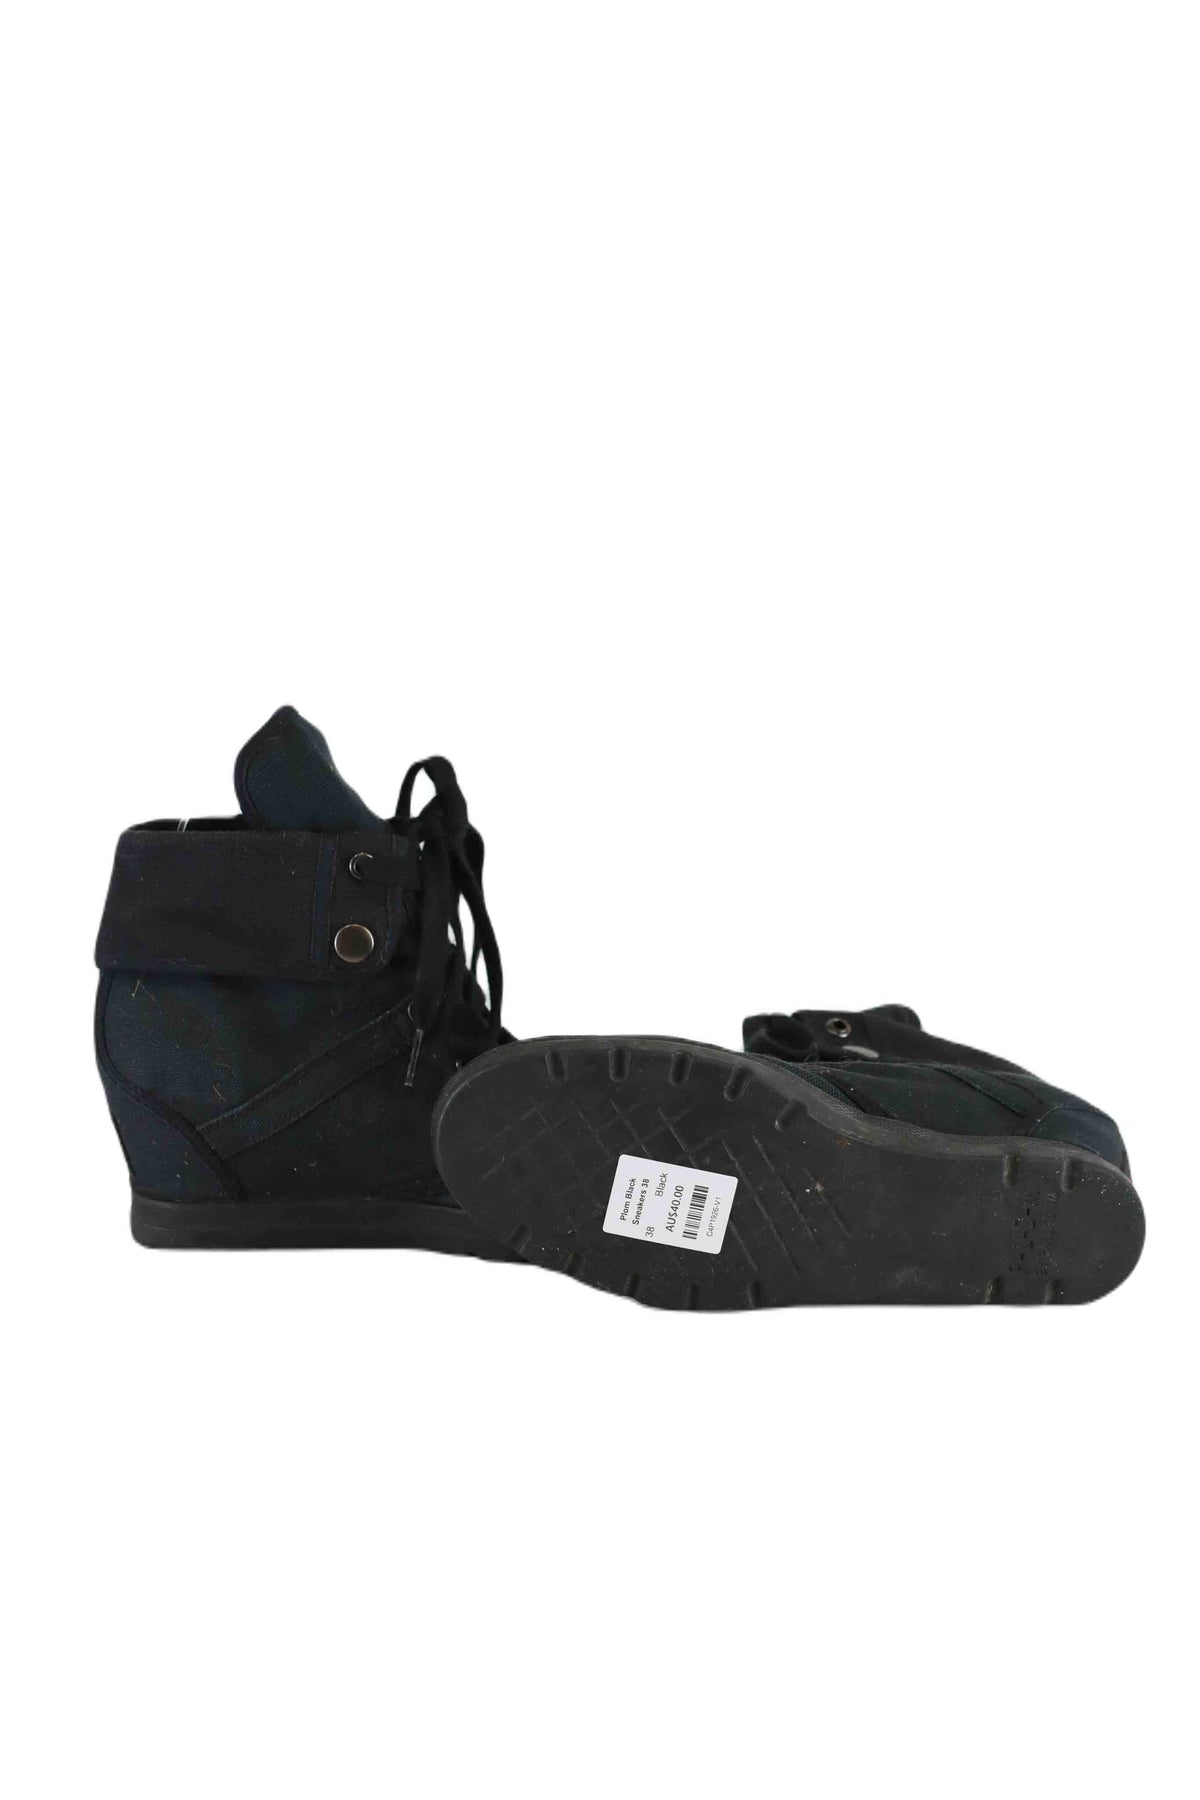 Plom Black Sneakers 38